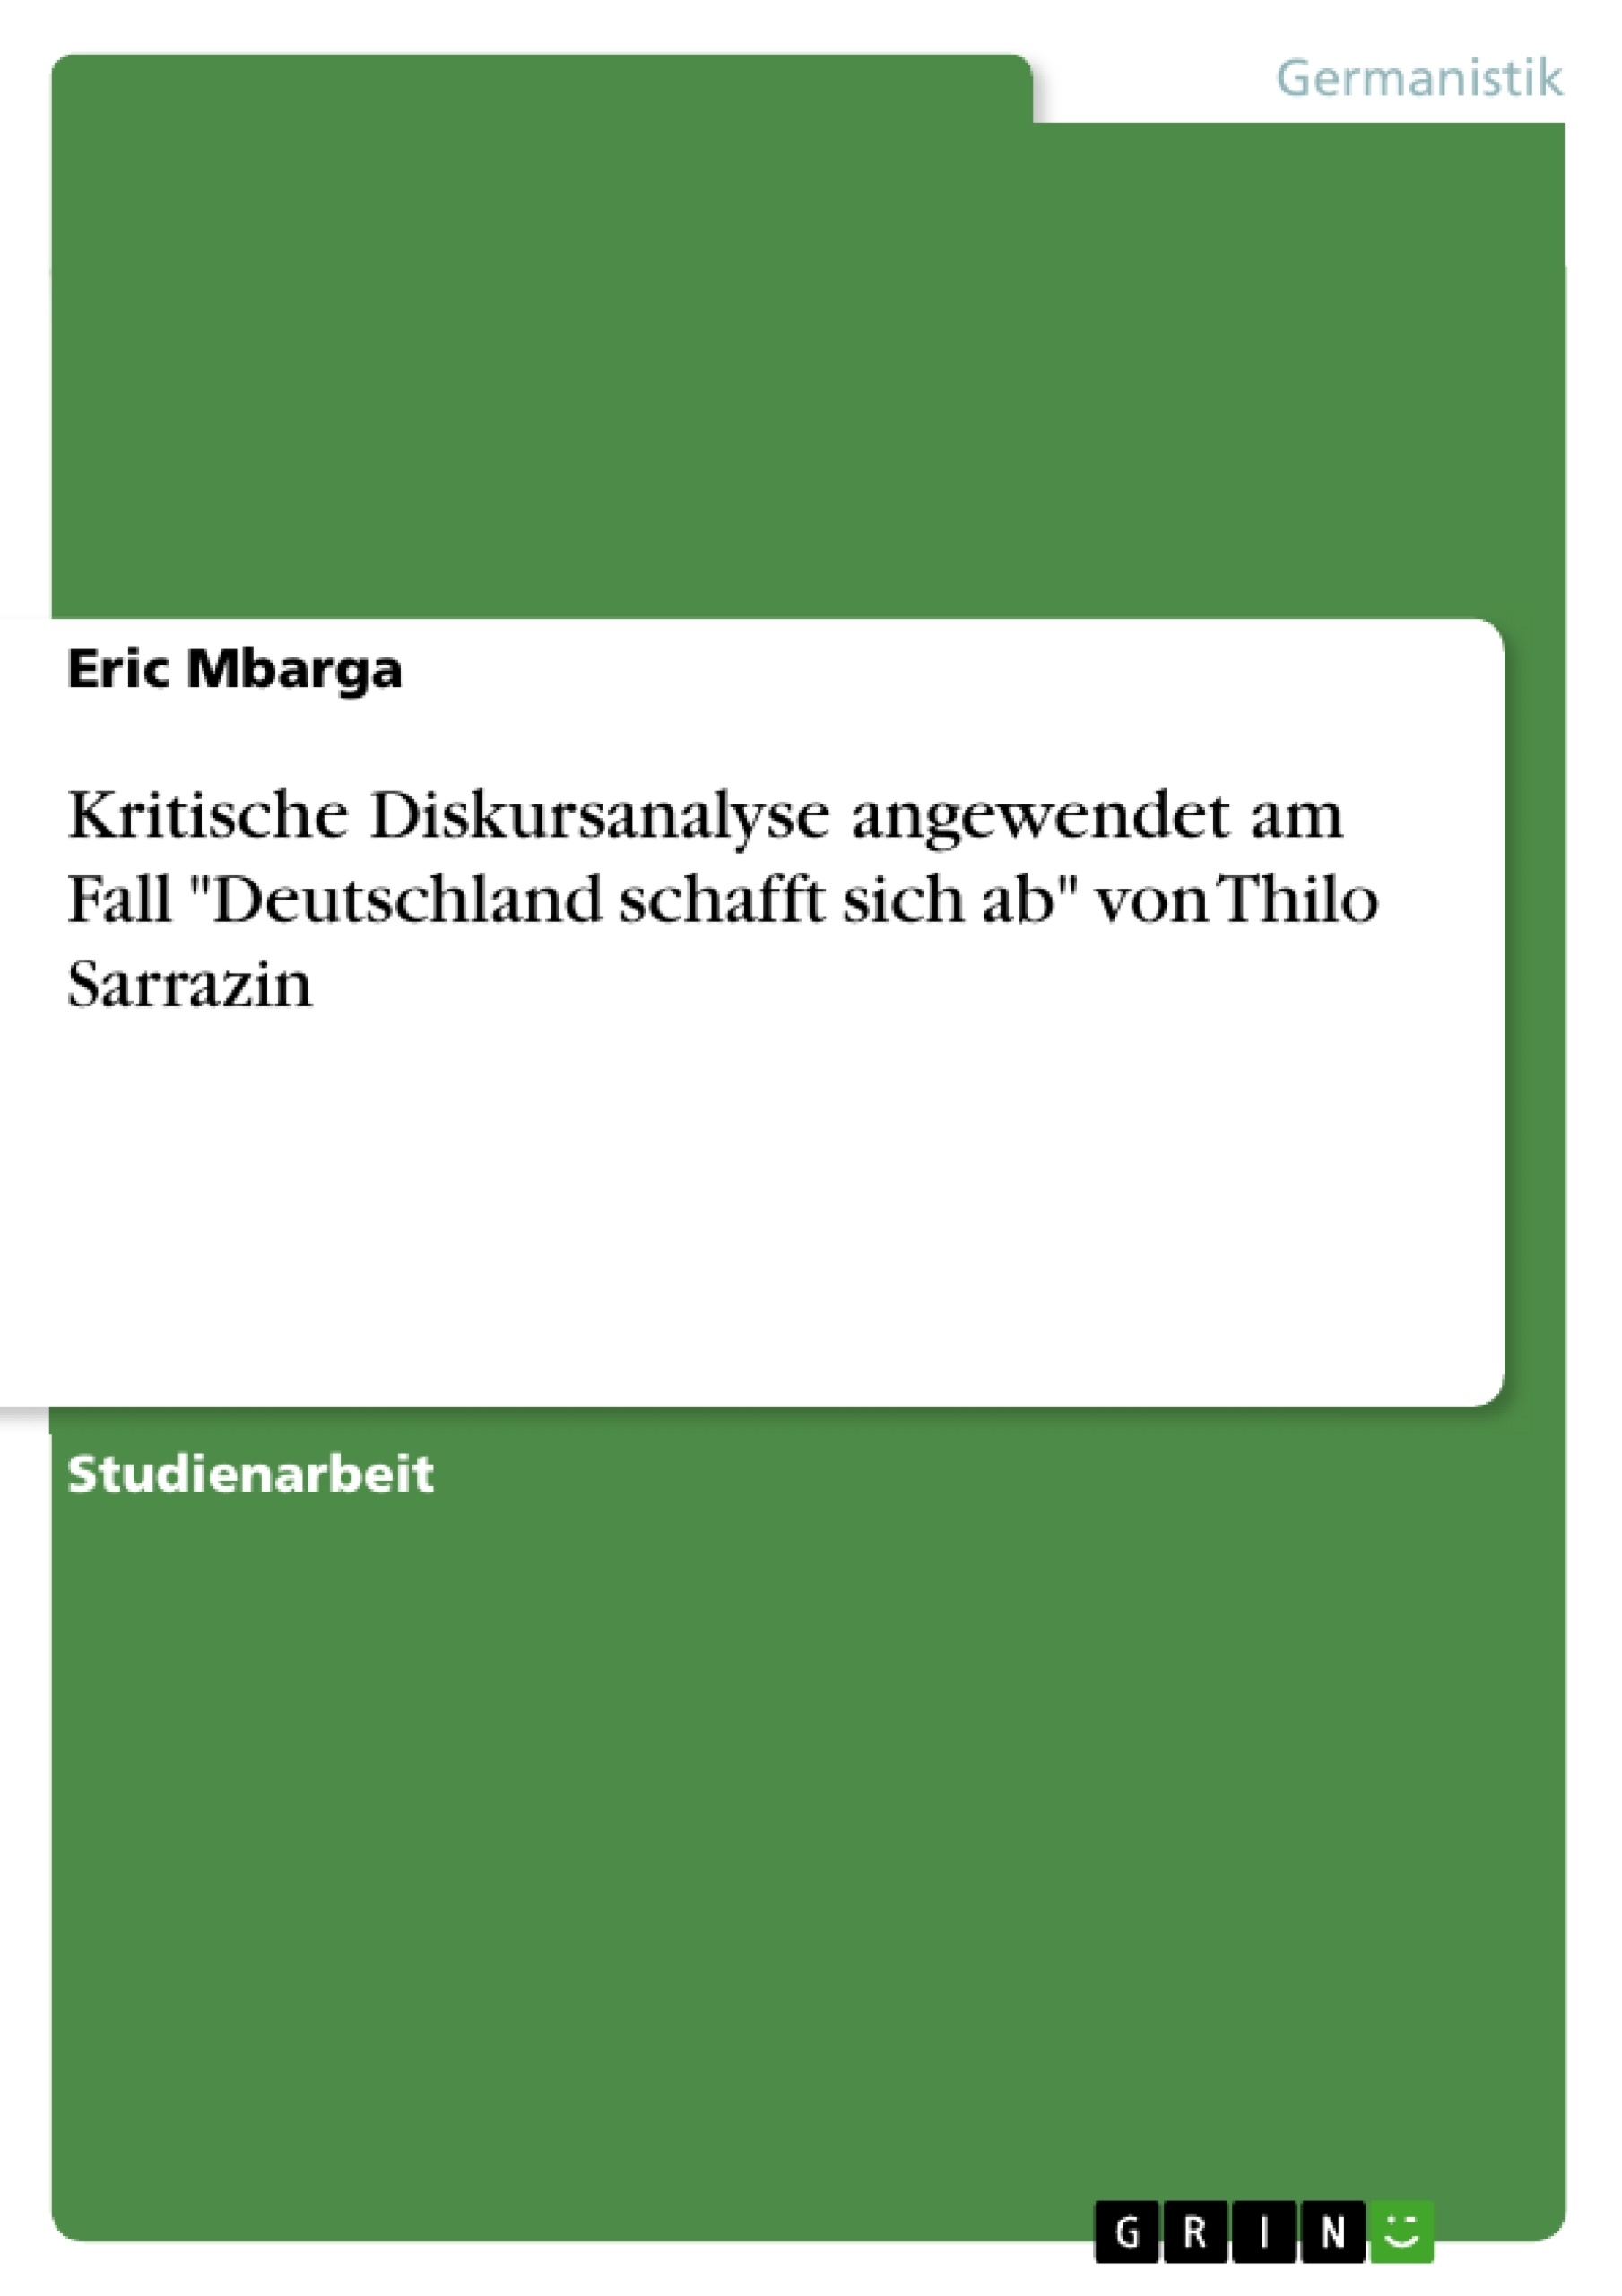 Título: Kritische Diskursanalyse angewendet am Fall "Deutschland schafft sich ab" von Thilo Sarrazin